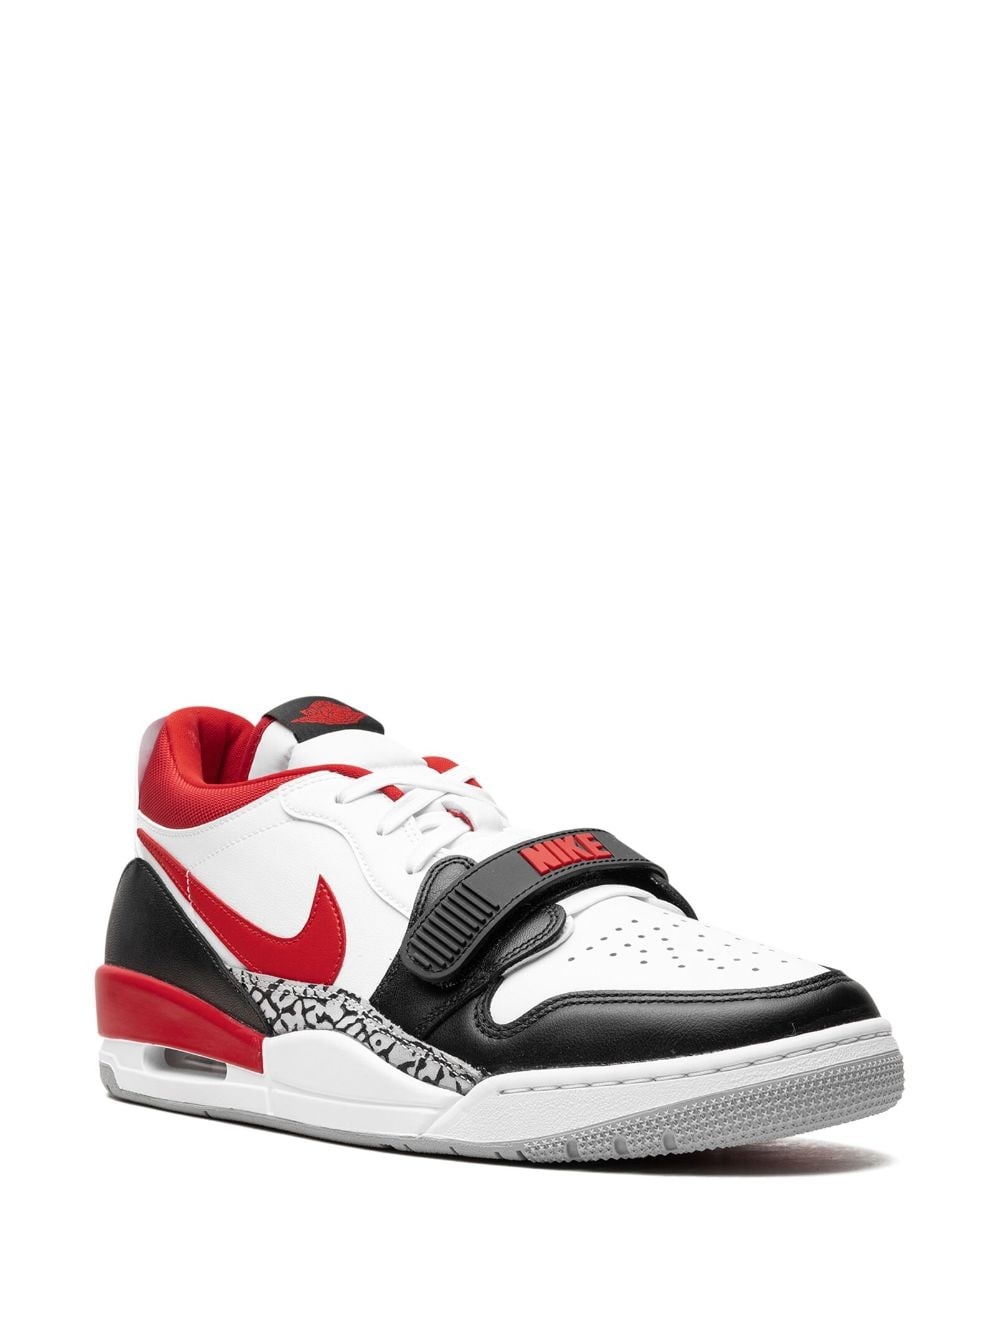 Air Jordan Legacy 312 Low "Fire Red" sneakers - 2